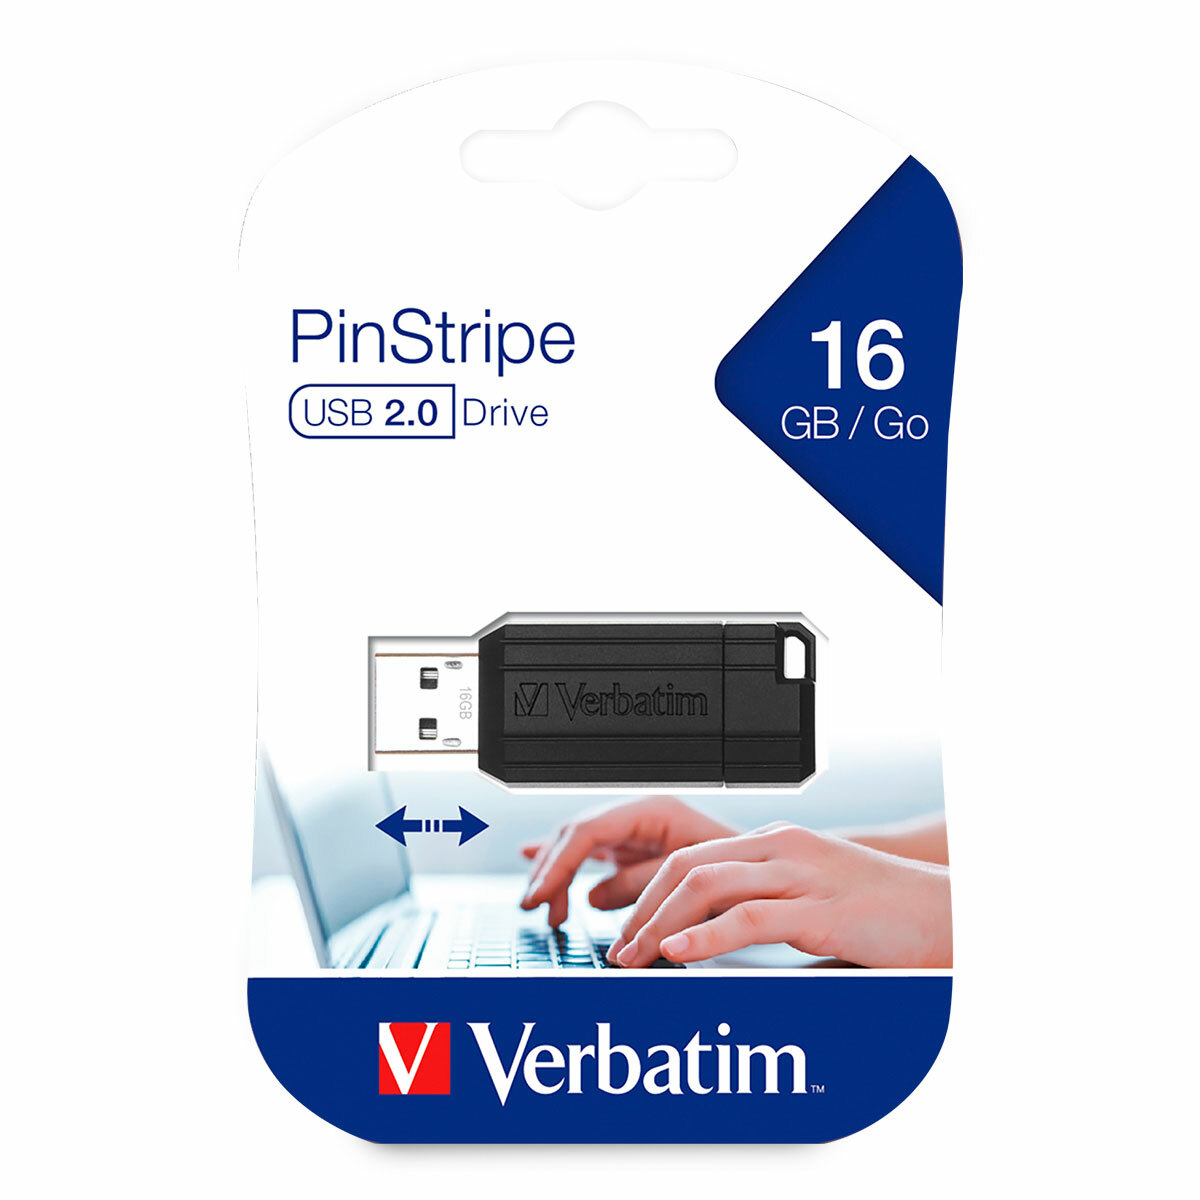 Memoria USB Verbatim Pinstripe 16GB Negro